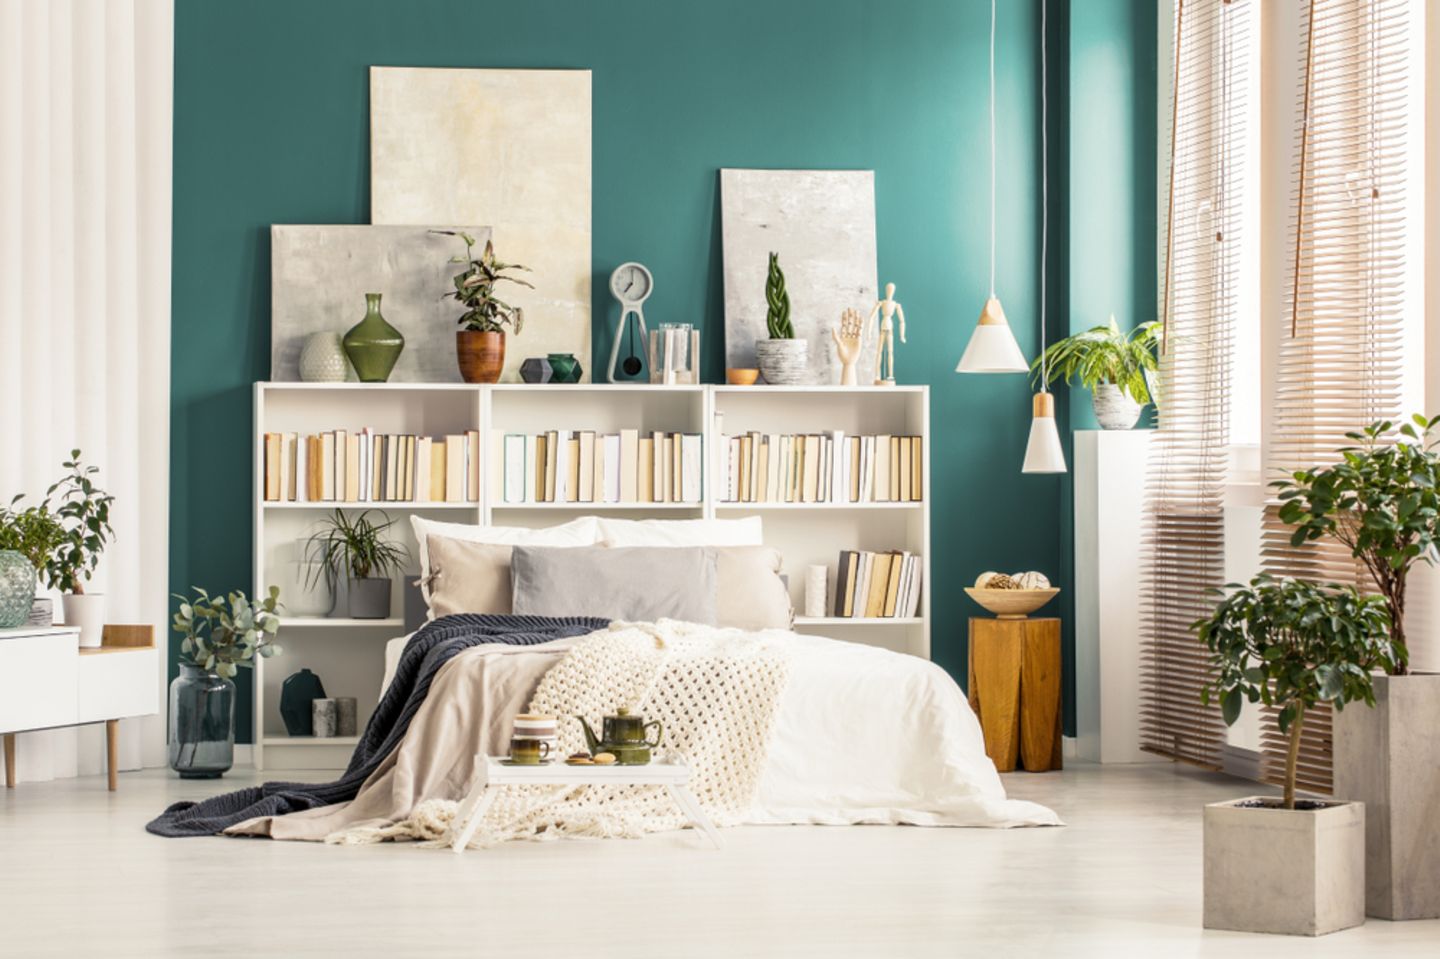 schlafzimmer wandgestaltung kreative biru warna tidur tosca blogpictures hinter bett wand